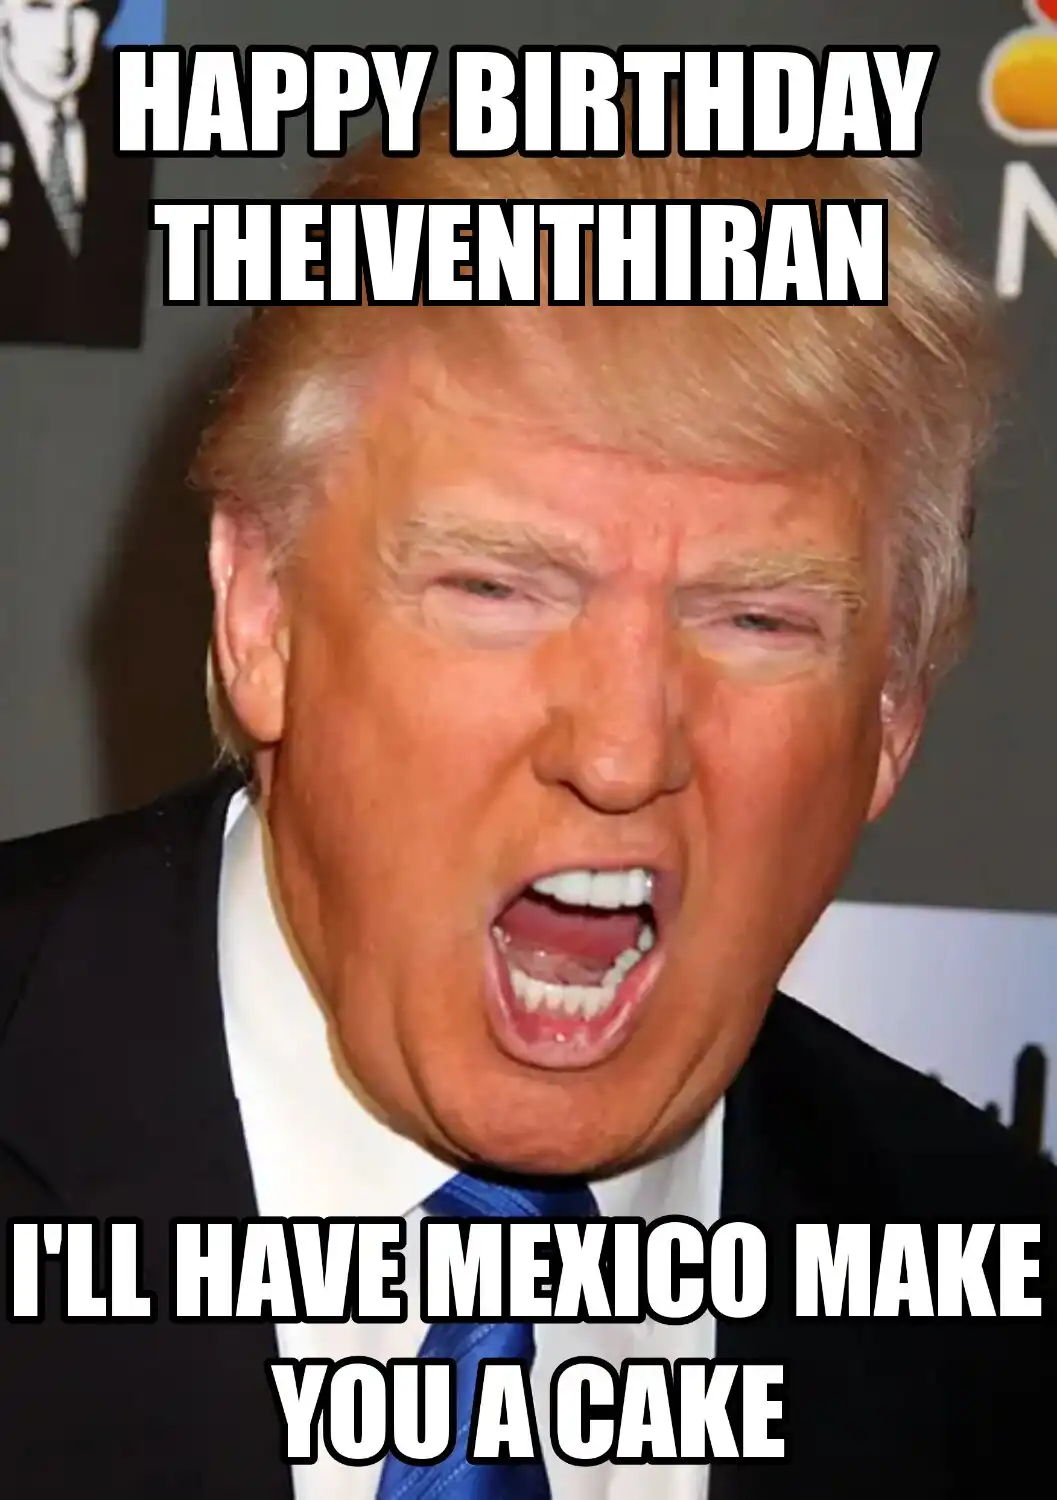 Happy Birthday Theiventhiran Mexico Make You A Cake Meme